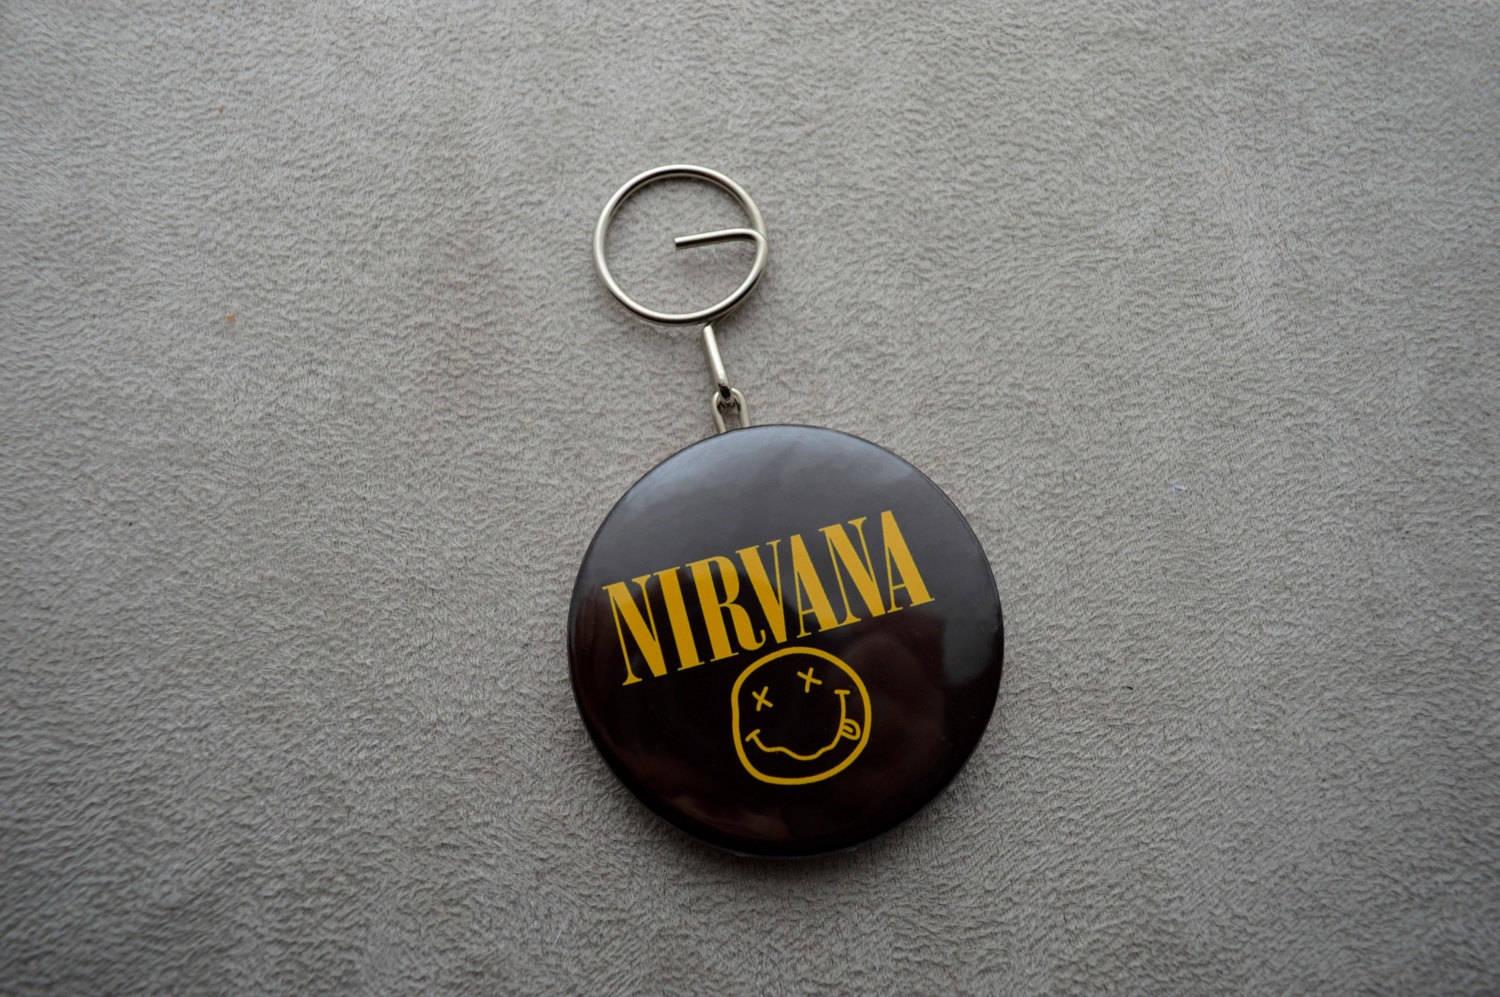 Bracelet élastique perles d'argent - Boutique Nirvana